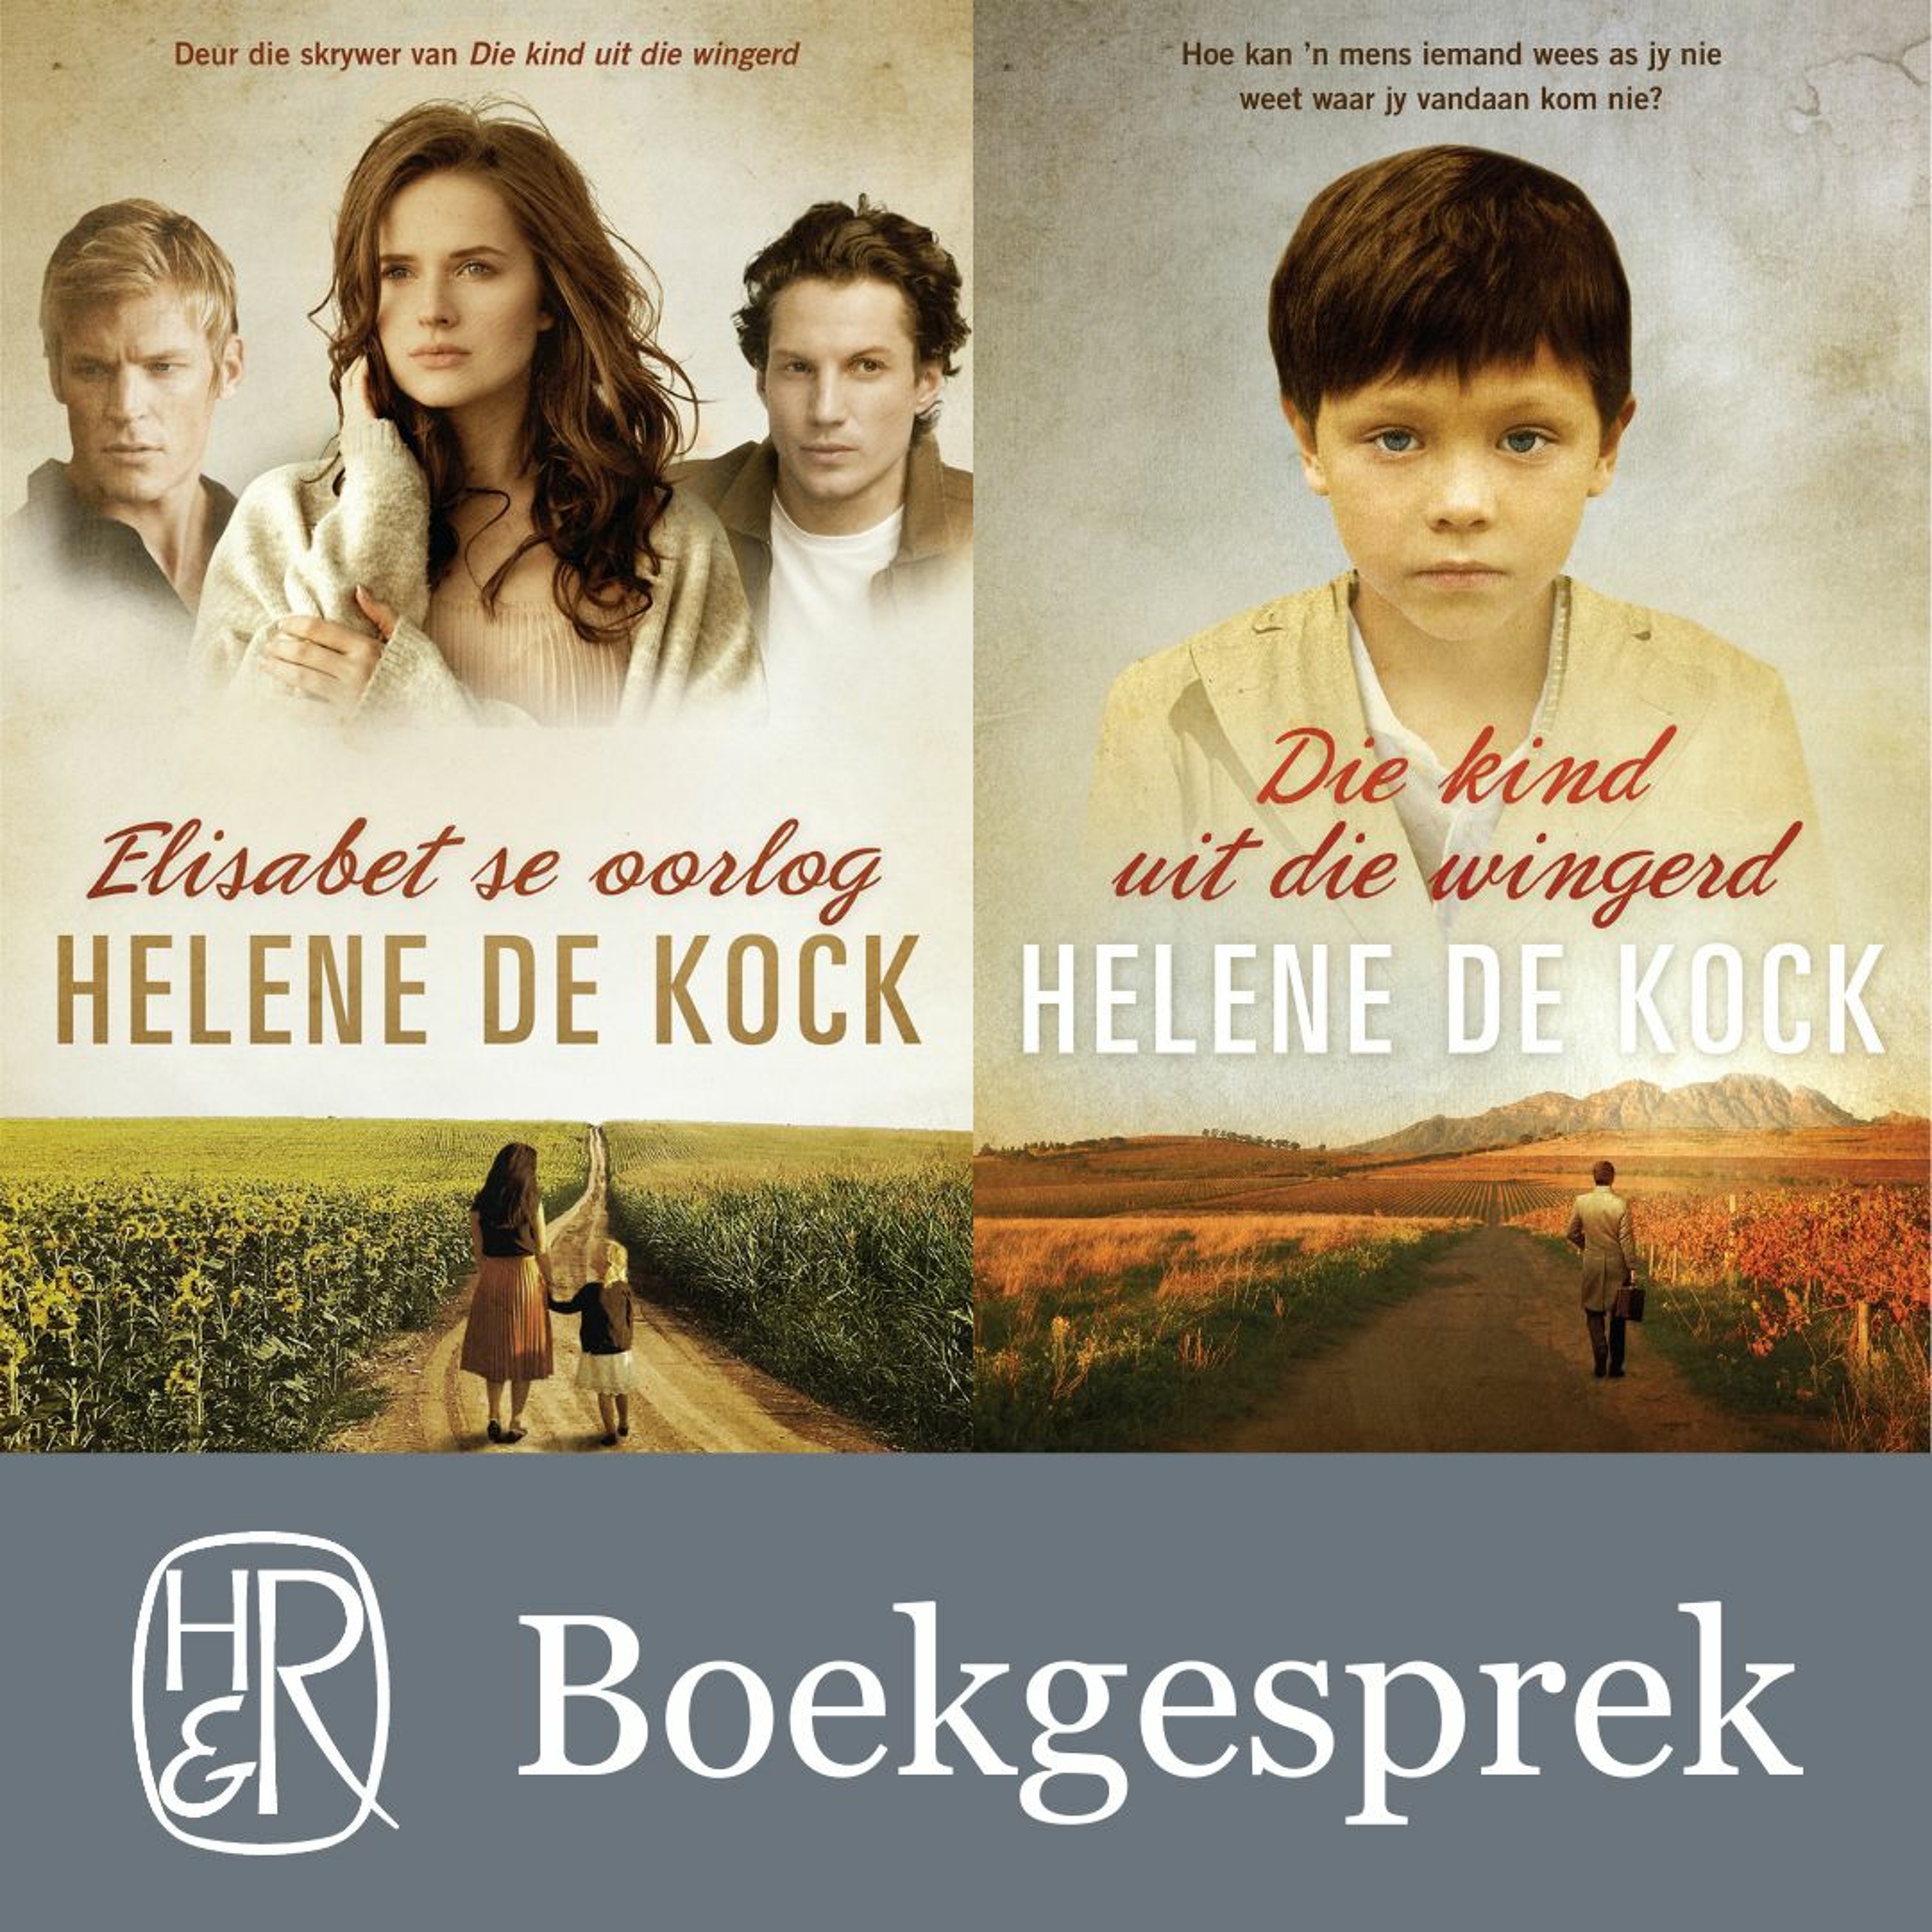 Human & Rousseau-boekgesprek: Truïse Prinsloo gesels met Helene de Kock oor Elisabet se oorlog